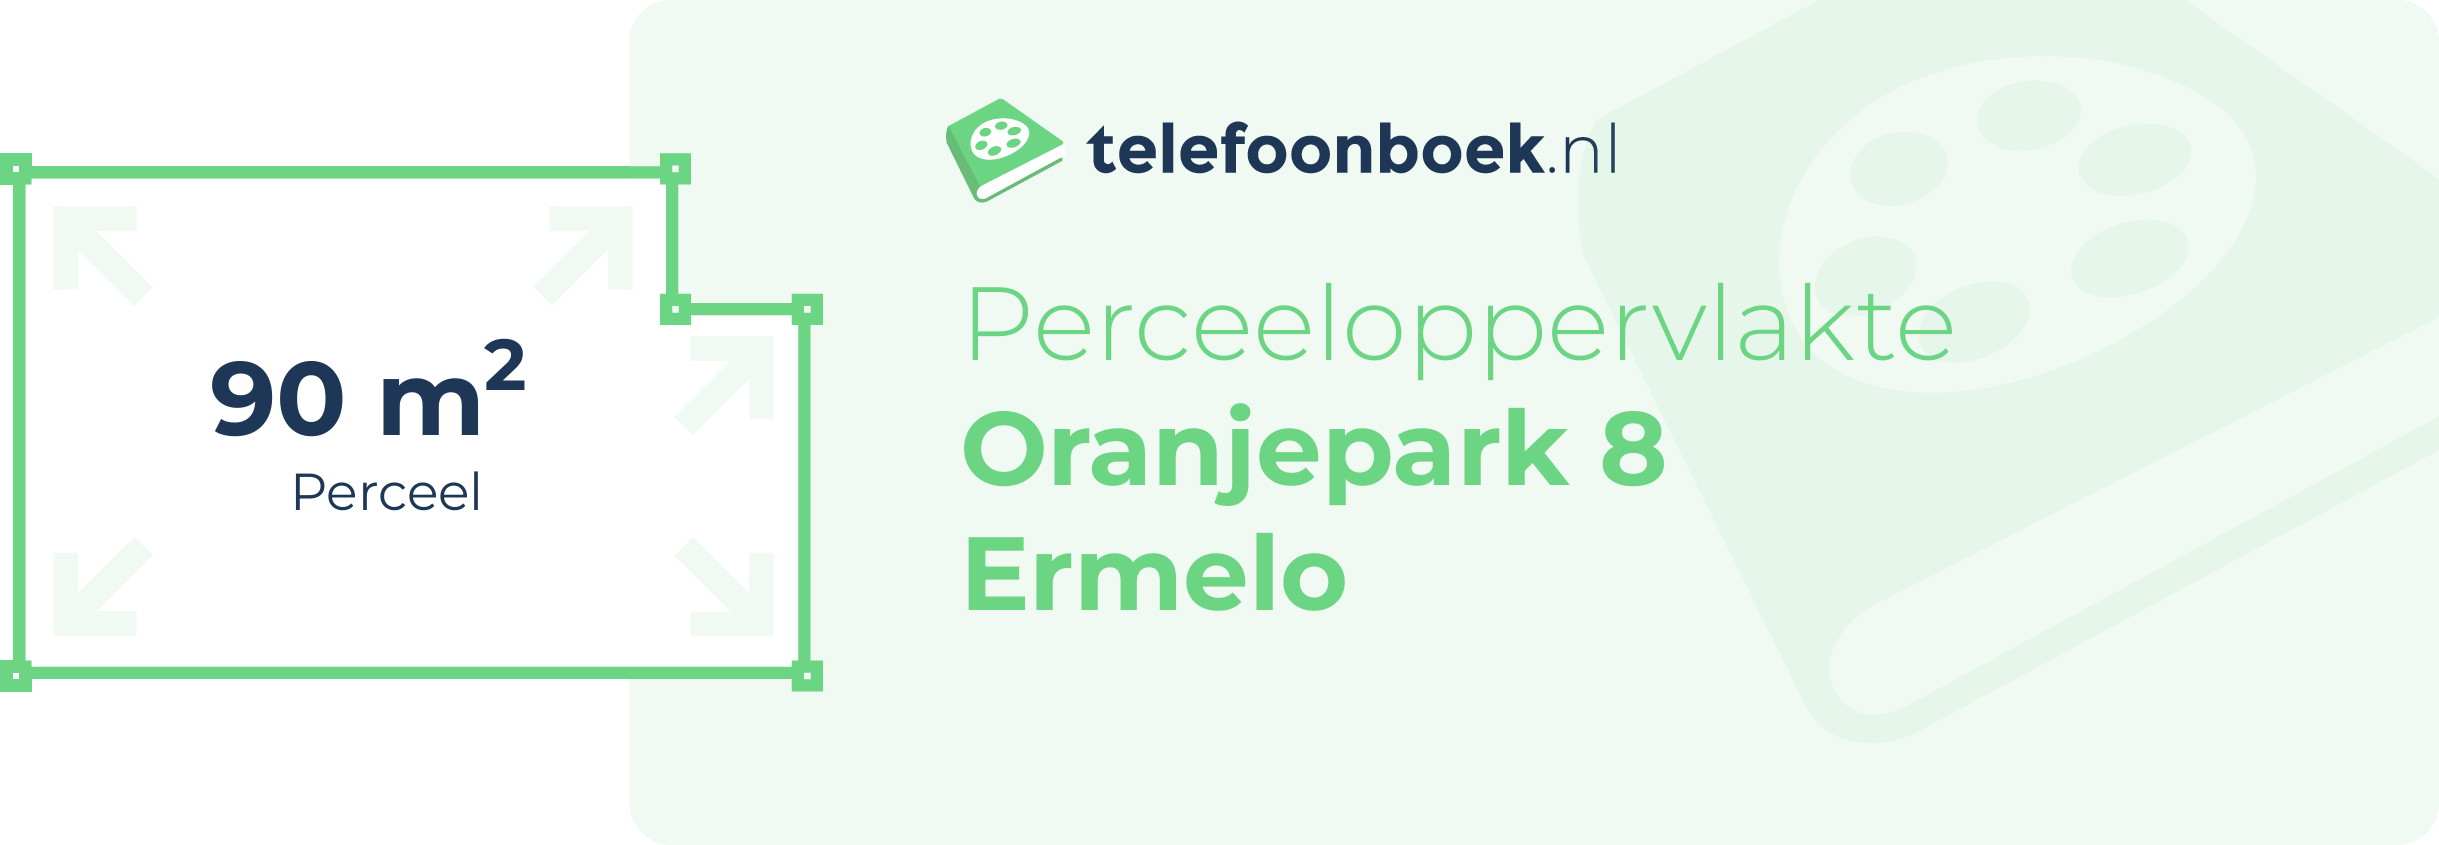 Perceeloppervlakte Oranjepark 8 Ermelo